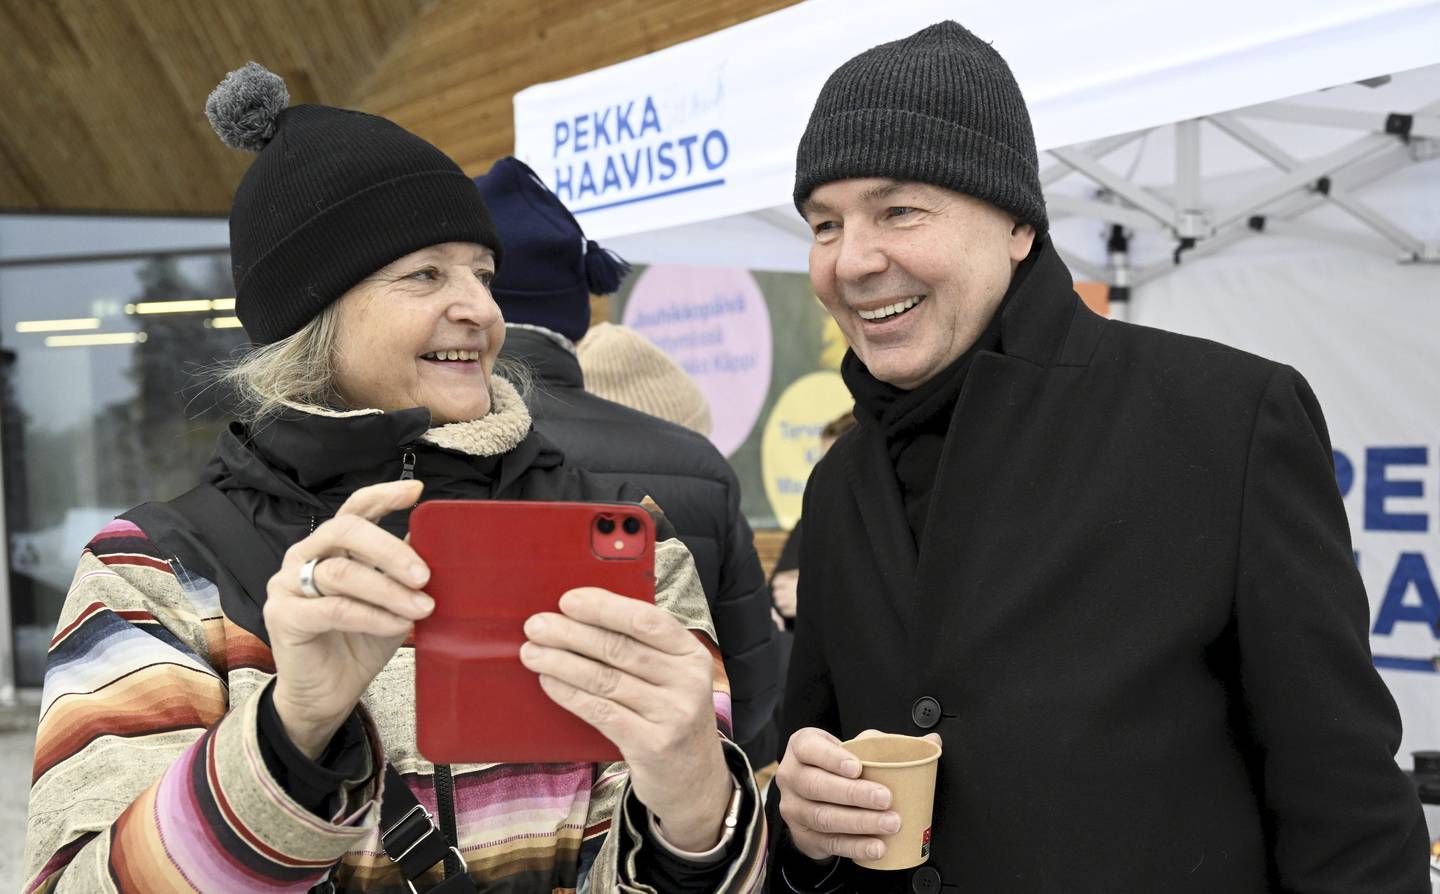 De Grönas presidentkandidat Pekka Haavisto tar et bilde sammen med en støttespiller under et valgkamparrangement i Helsingfors i desember. Foto: Vesa Moilanen / Lehtikuva via AP / NTB